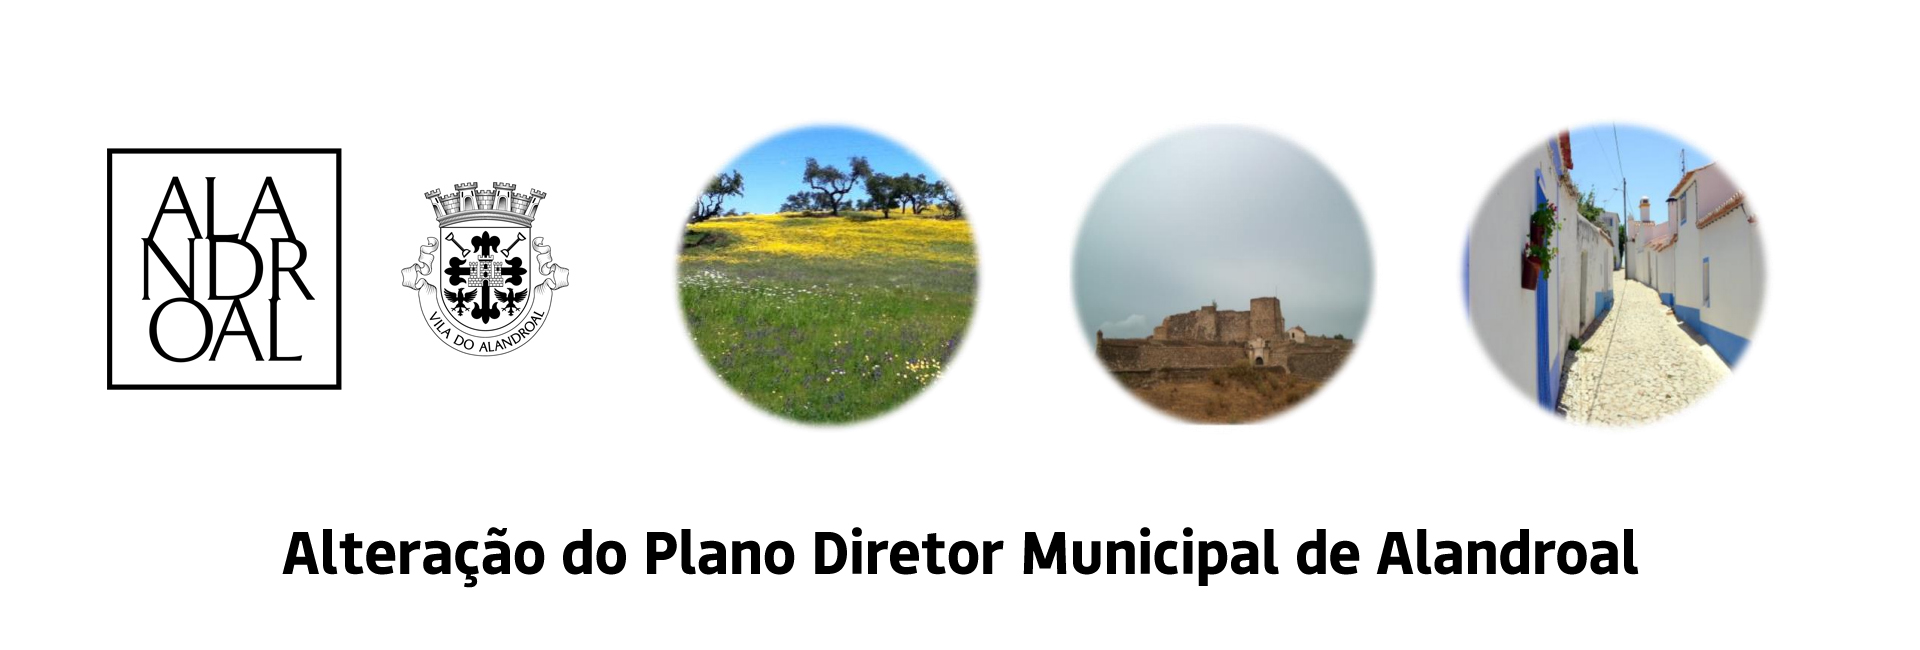 (Português) Alteração do Plano Diretor Municipal de Alandroal